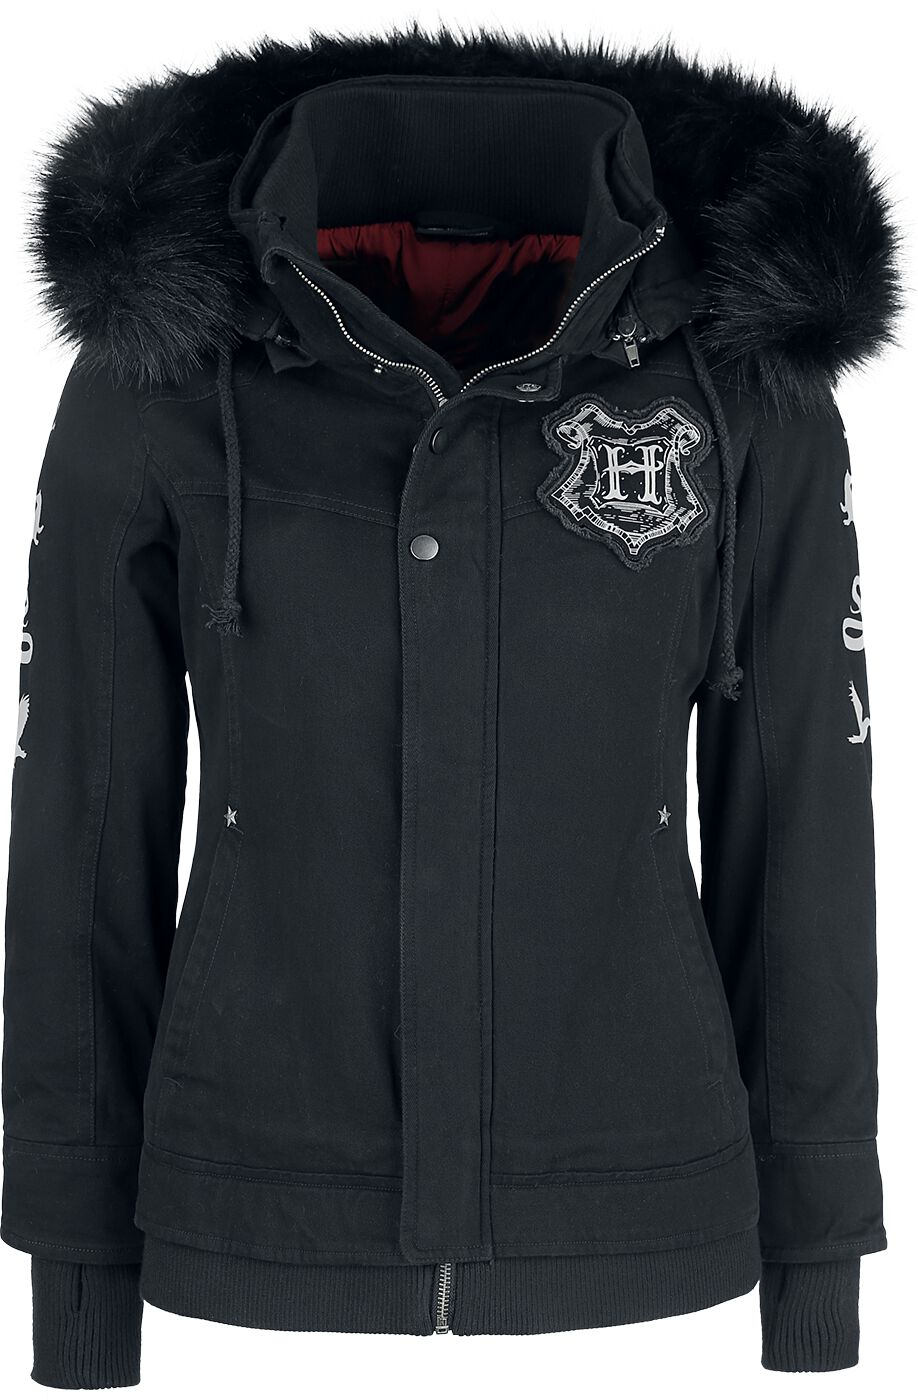 Harry Potter Winterjacke - Hogwarts Crest - XS bis XXL - für Damen - Größe S - schwarz  - EMP exklusives Merchandise!